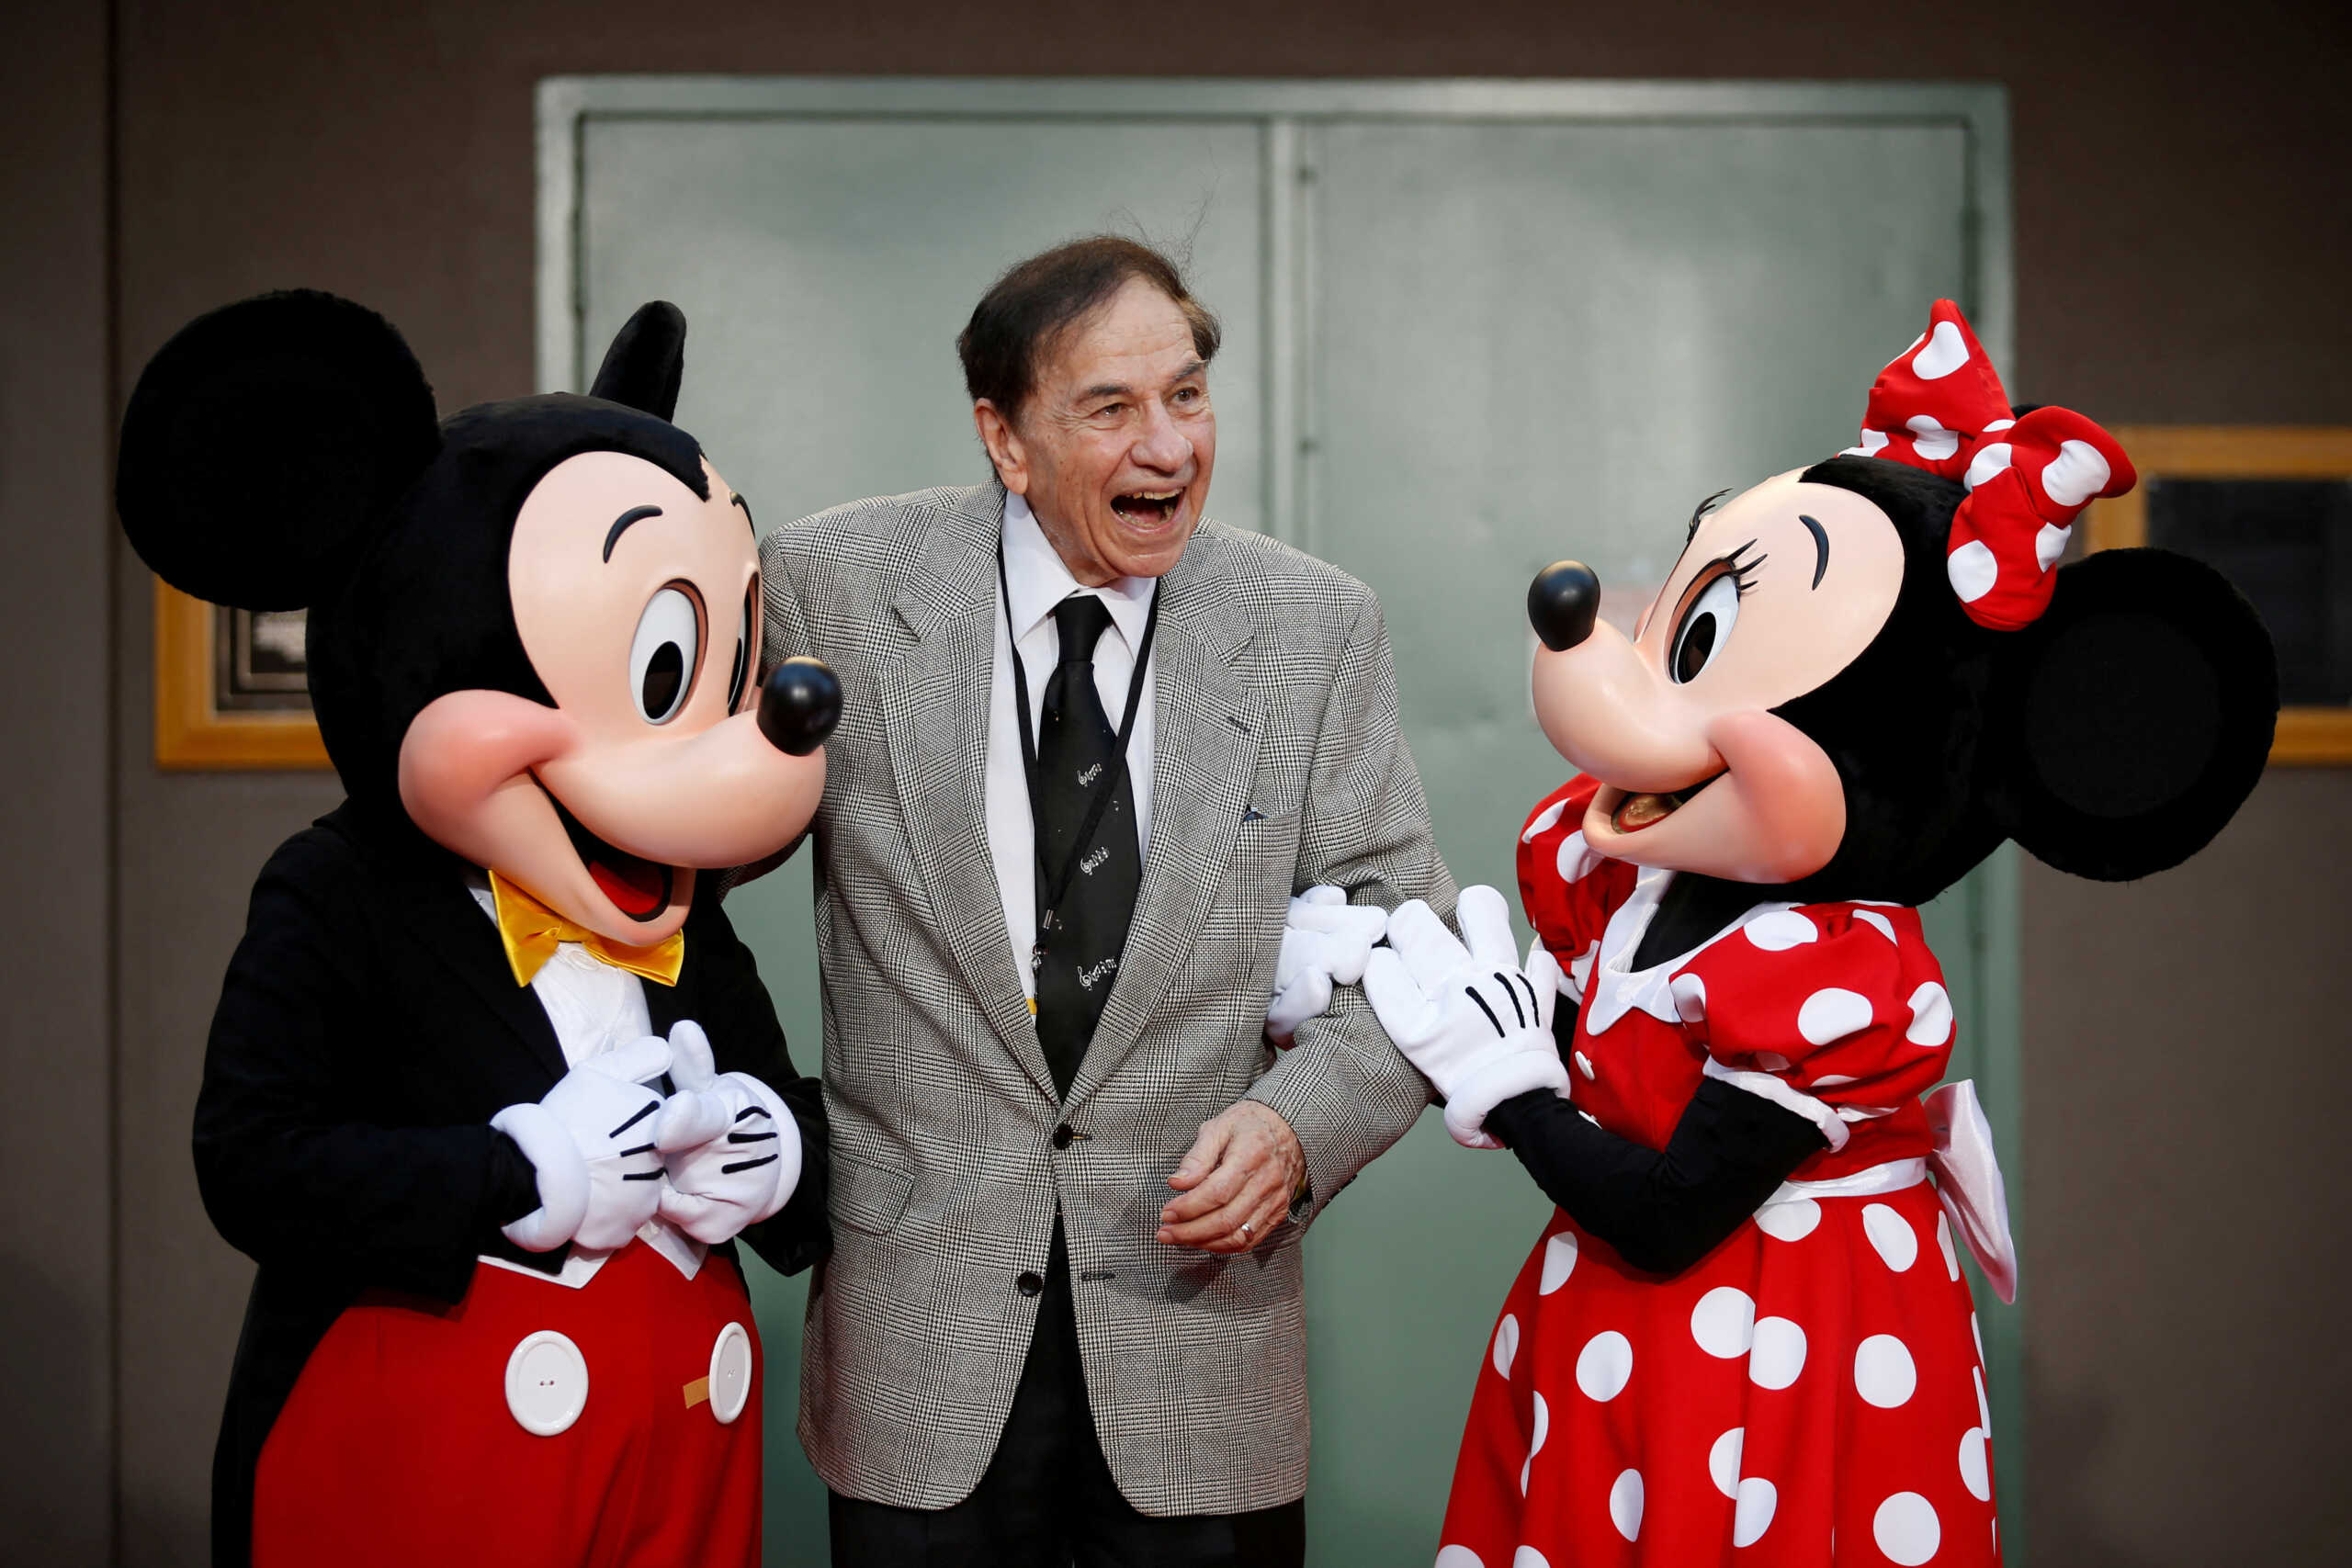 Ρίτσαρντ Σέρμαν: Πέθανε ο πολυβραβευμένος στιχουργός και συνθέτης της Disney, δημιουργός των τραγουδιών της «Μαίρη Πόπινς»